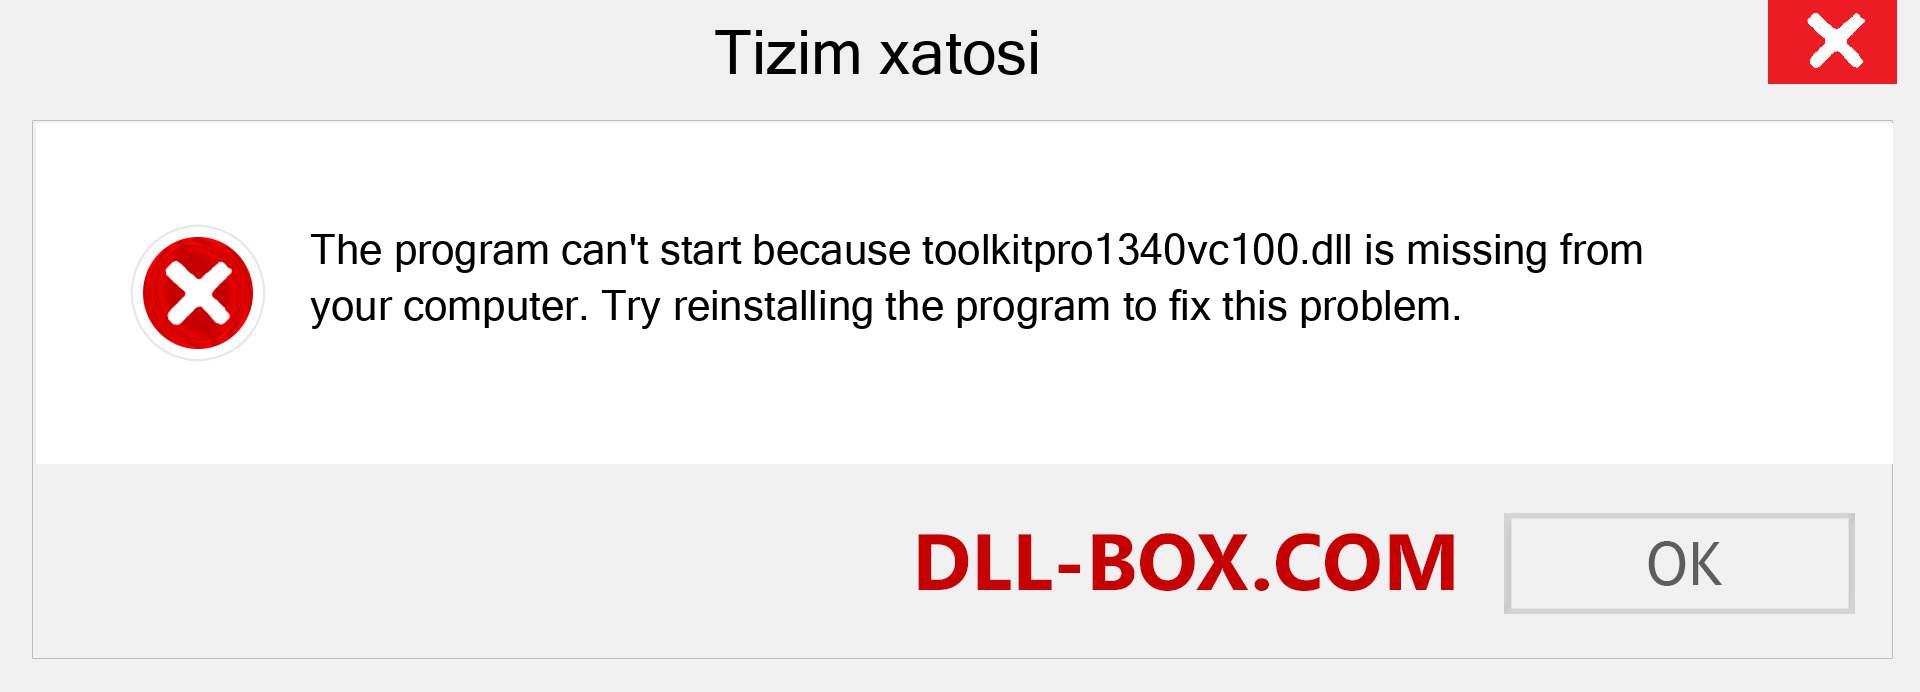 toolkitpro1340vc100.dll fayli yo'qolganmi?. Windows 7, 8, 10 uchun yuklab olish - Windowsda toolkitpro1340vc100 dll etishmayotgan xatoni tuzating, rasmlar, rasmlar